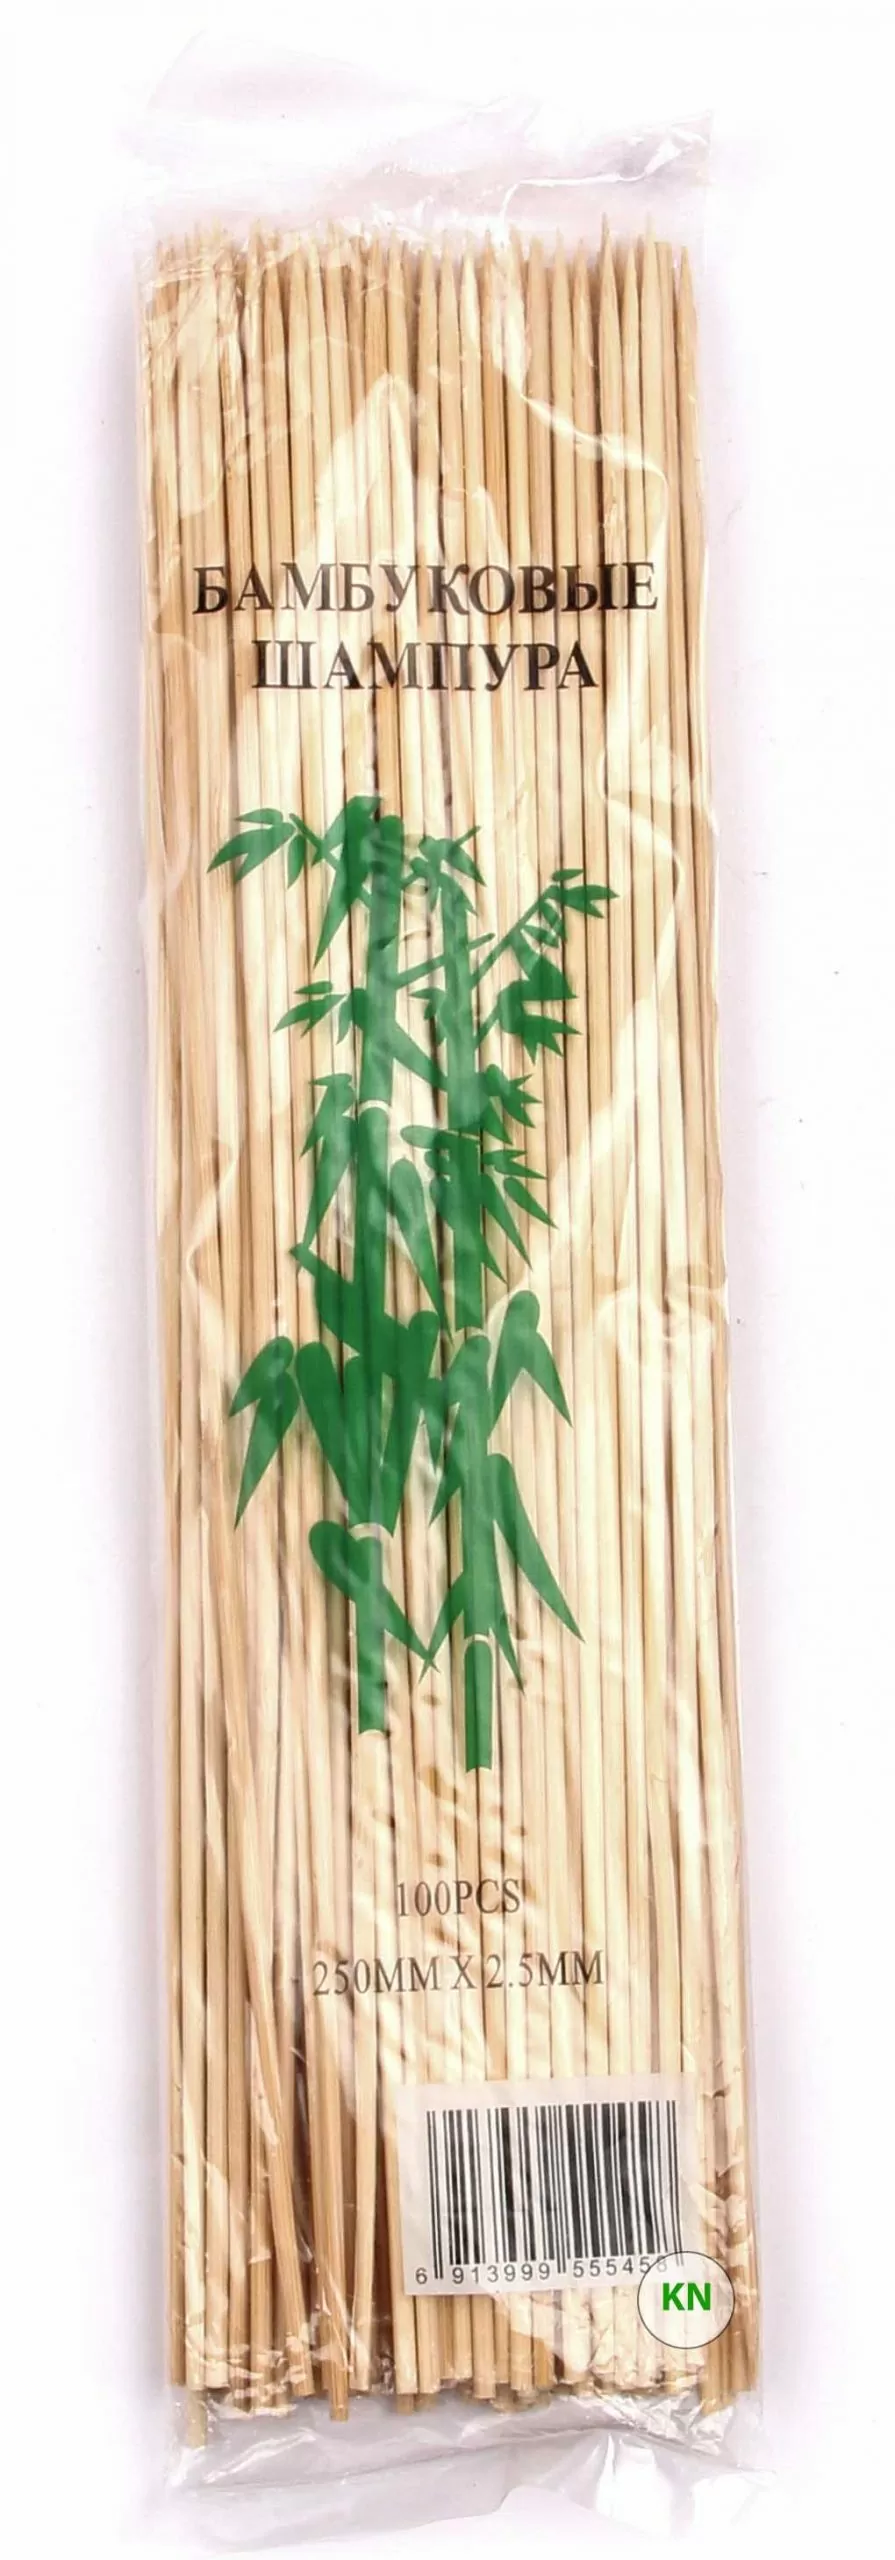 Шампуры бамбуковые (2,5 мм, 25 см)